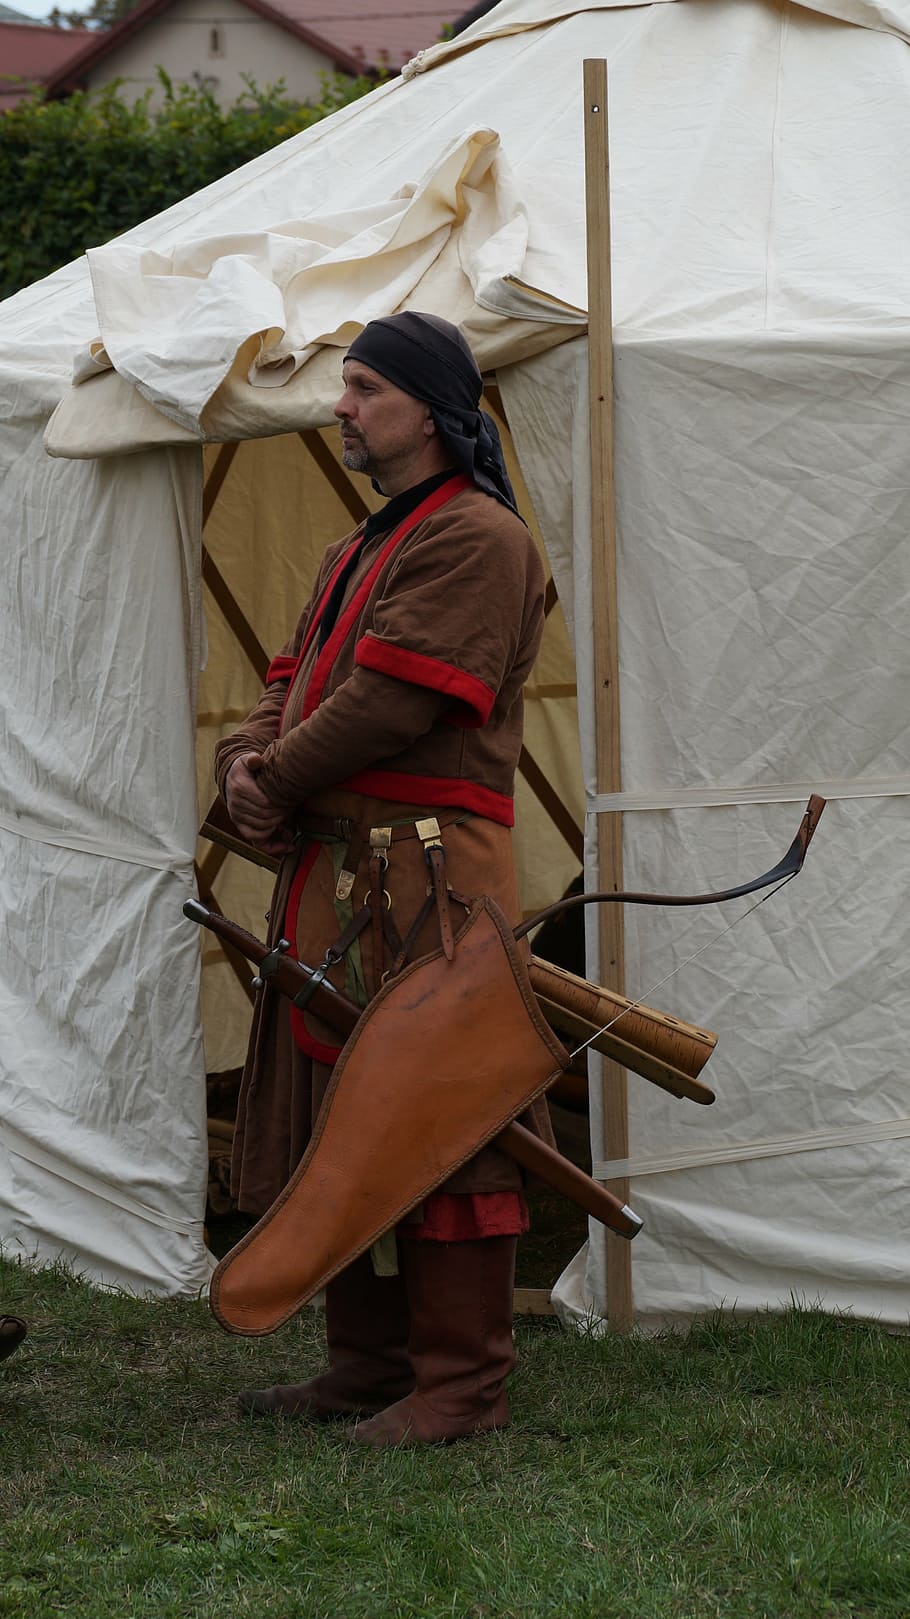 orang, prajurit, pemanah, kostum, hobi, tradisional, pemburu, pengembara, tenda, sejarah